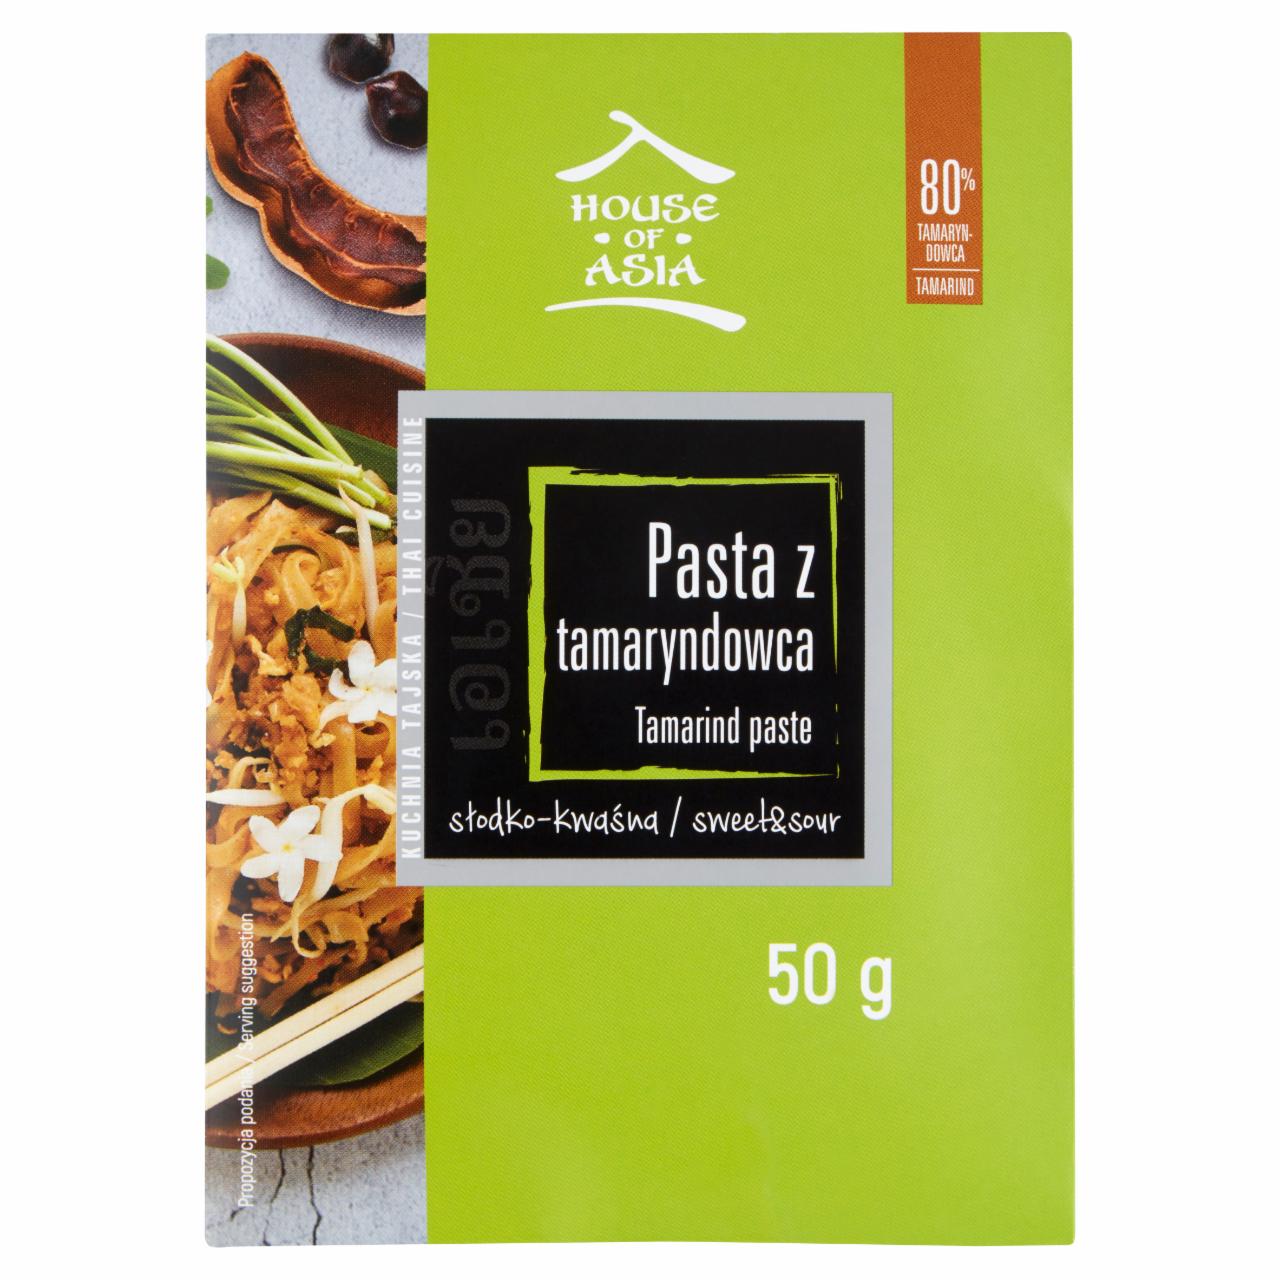 Zdjęcia - House of Asia Pasta z tamaryndowca 50 g